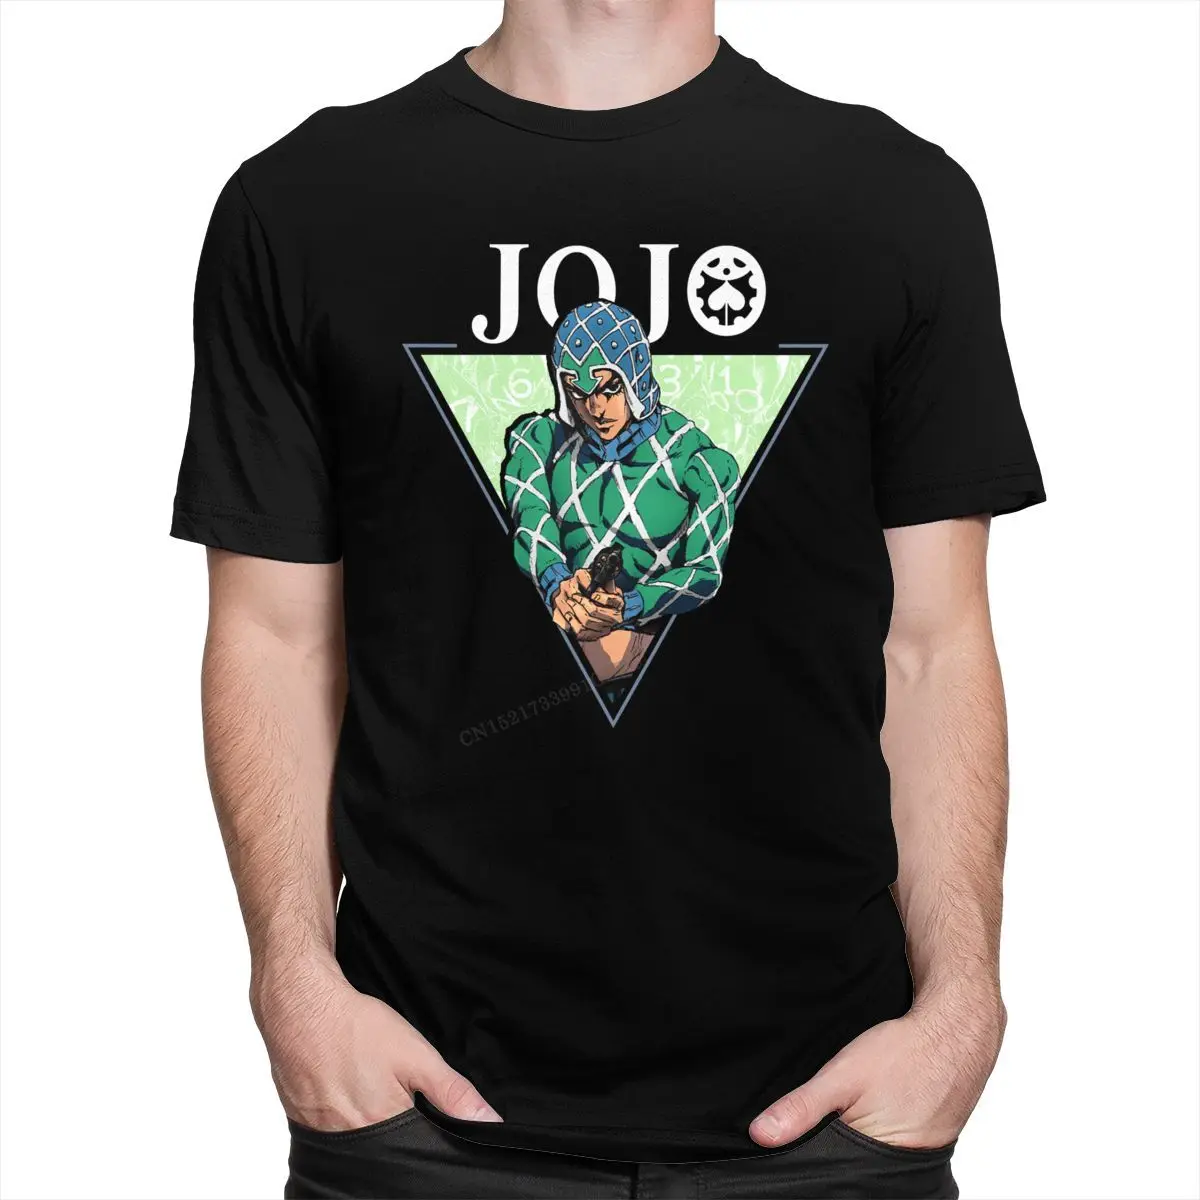 

Классные мужские футболки с рисунком Джоджо, Необычные строгие футболки с принтом манга, Гидо, миста, облегающие хлопковые футболки премиум-класса в подарок